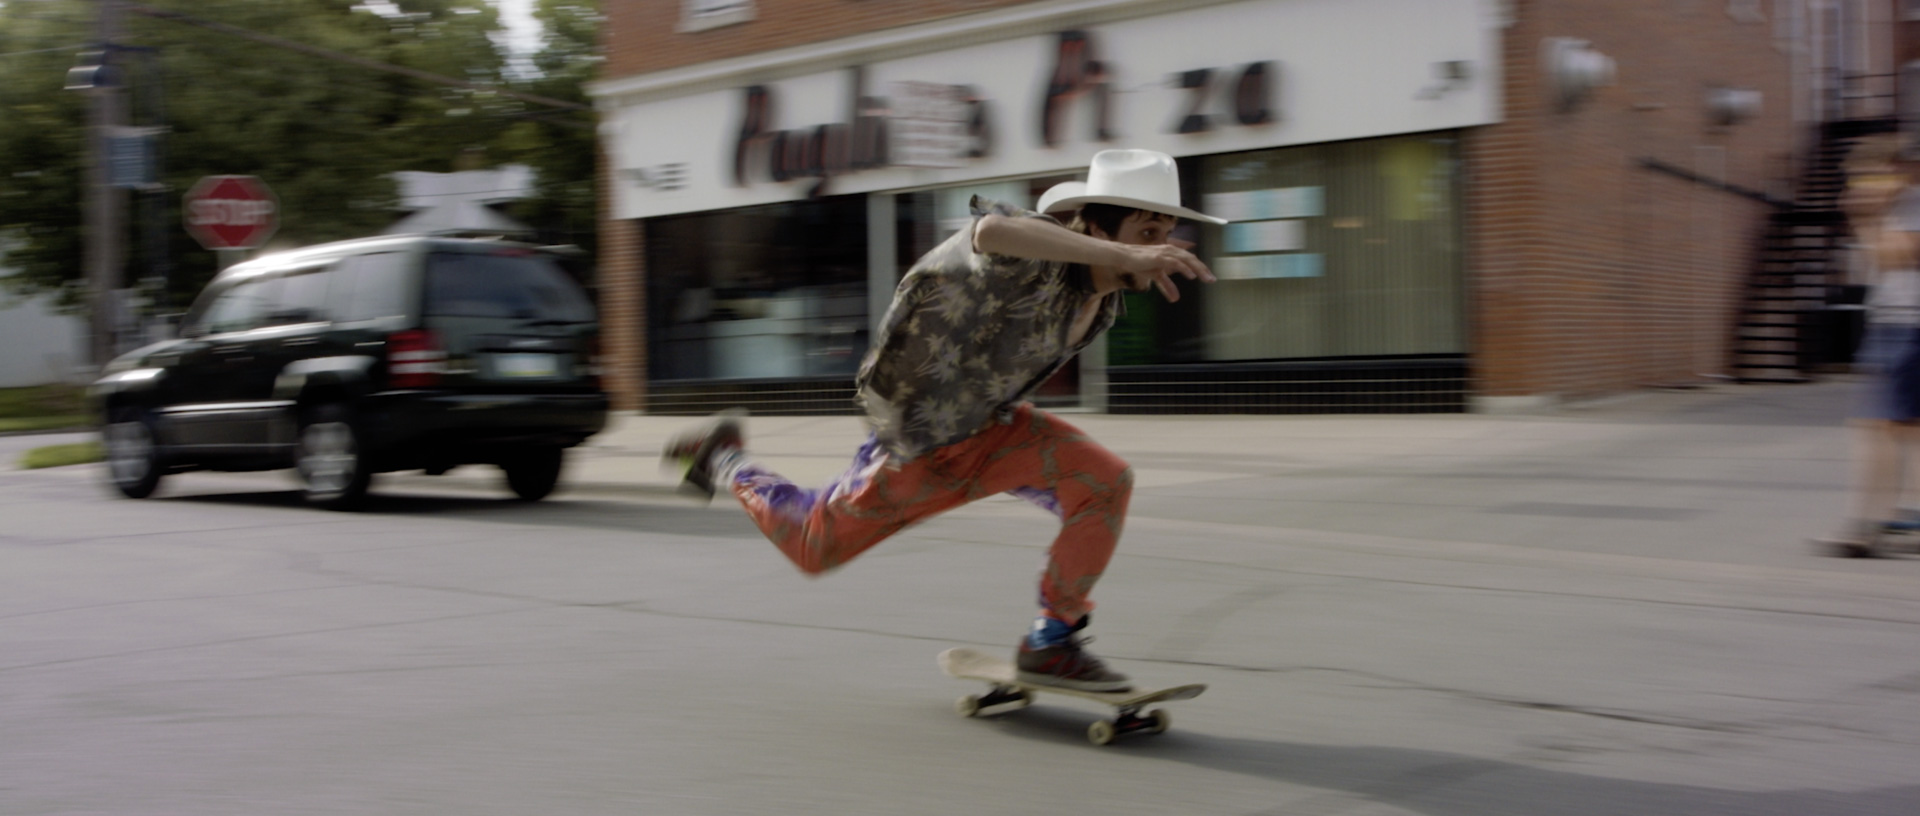 Guy skateboarding